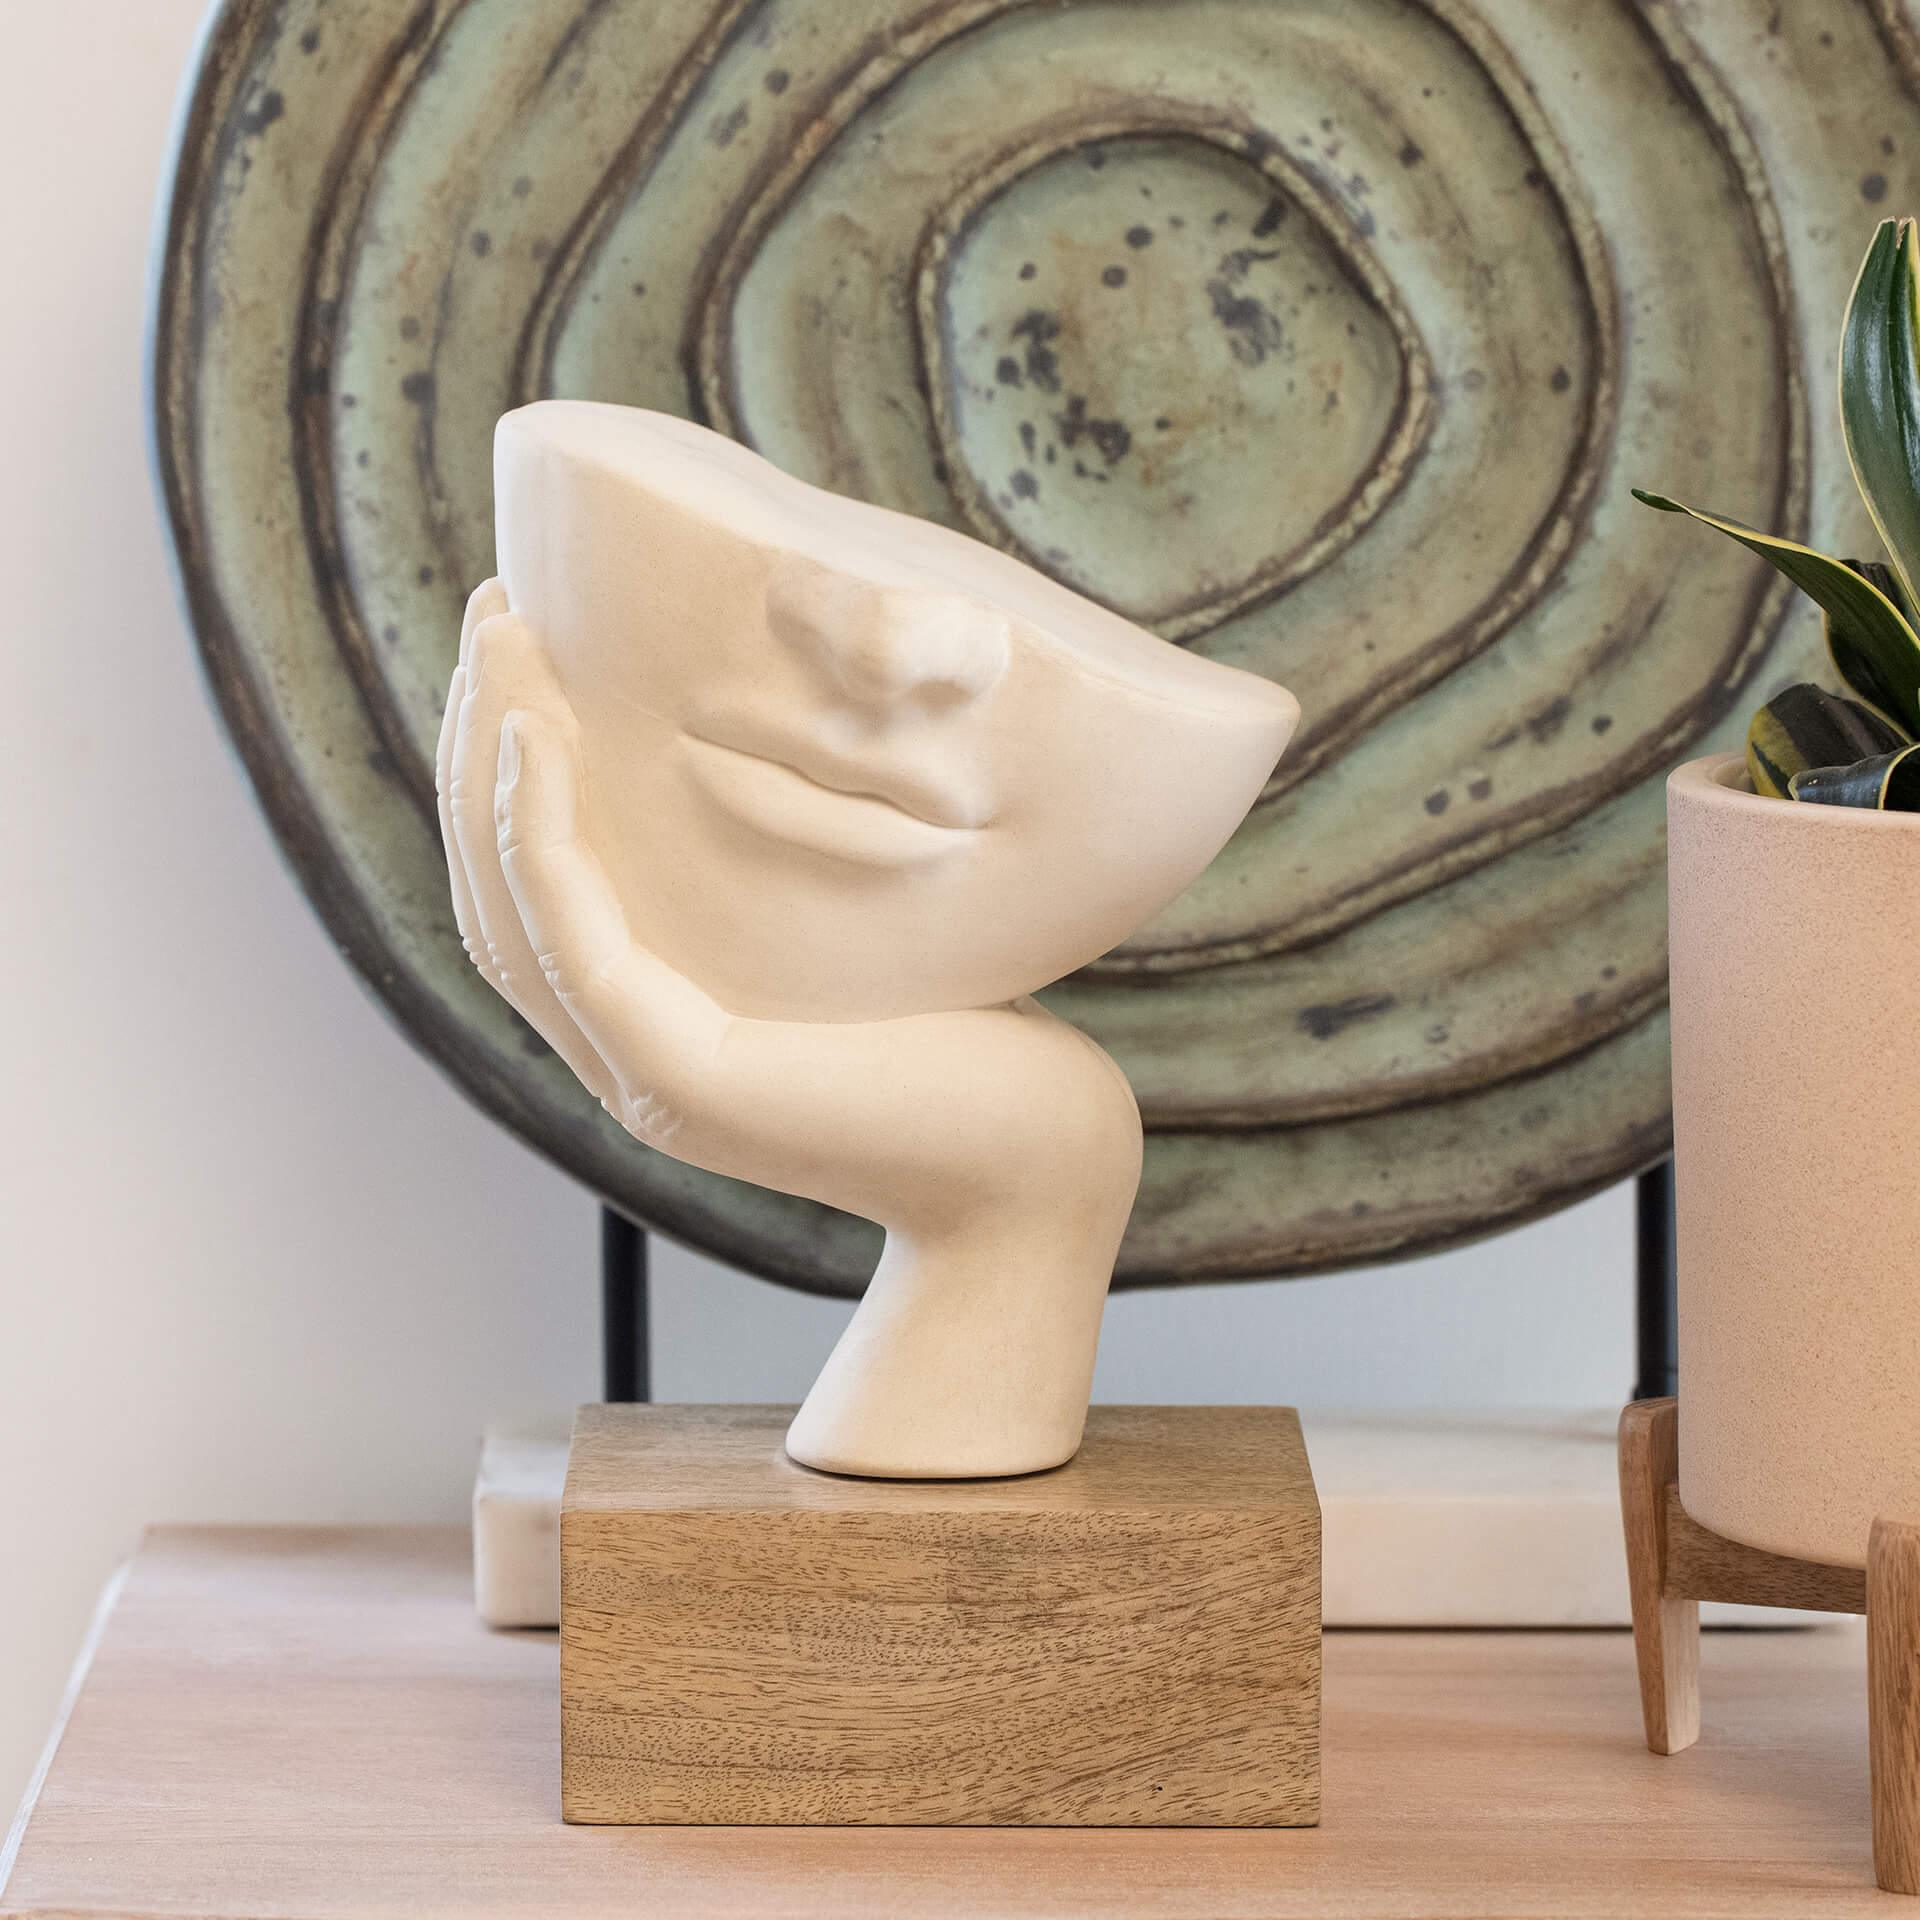 Restive Face Ceramic Sculpture